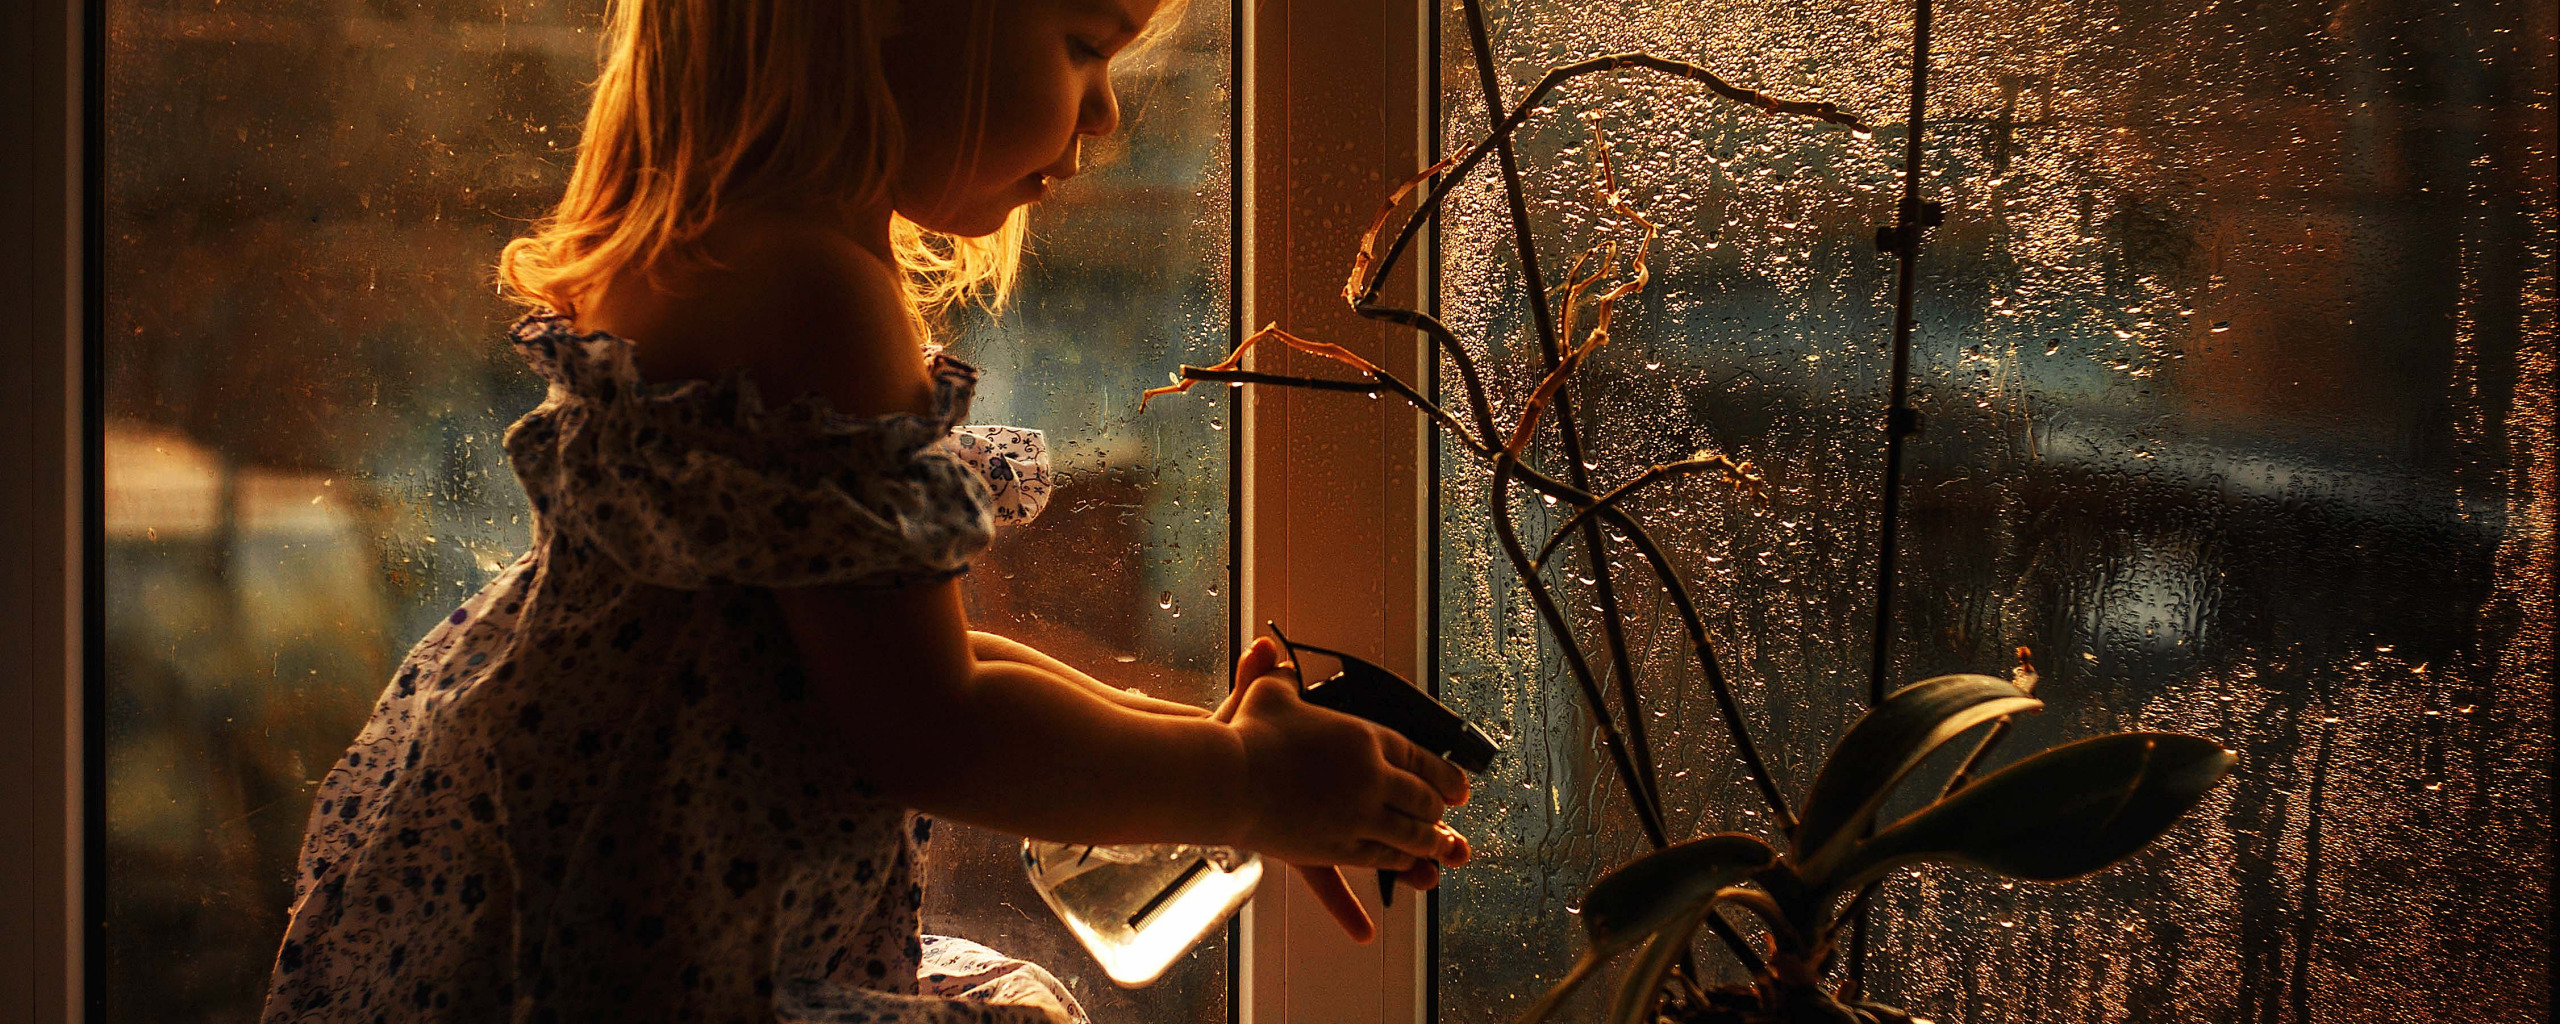 Выйти в окно песня. Пластиковые окна девушка. Цветок на окне шпионы. Девушка с цветами у окна.